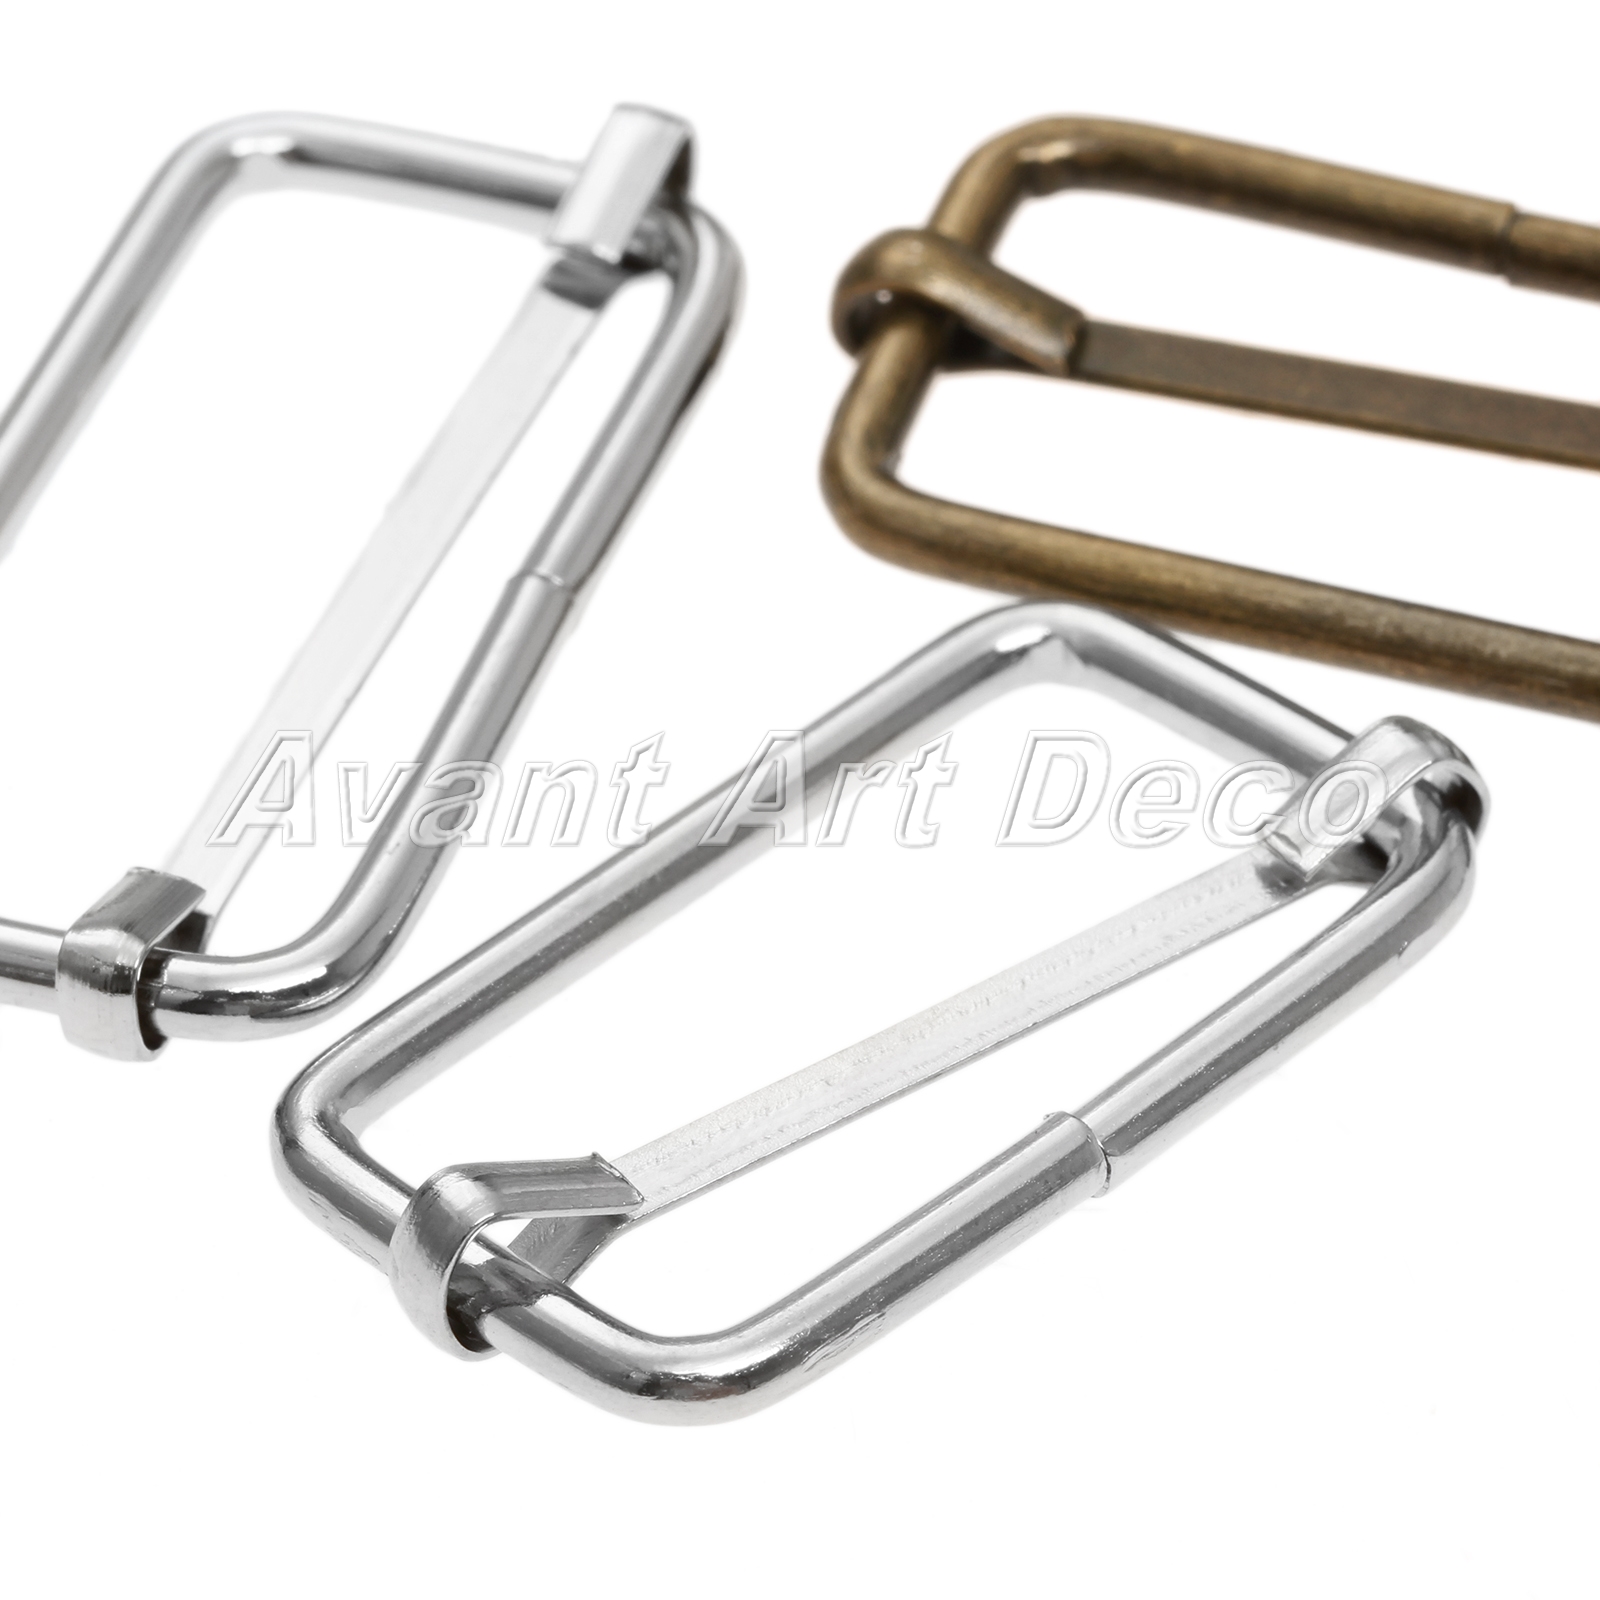 20Pcs Metal Webbing Bag Buckle Slide Adjustor Adjustable Square Ring Buckles